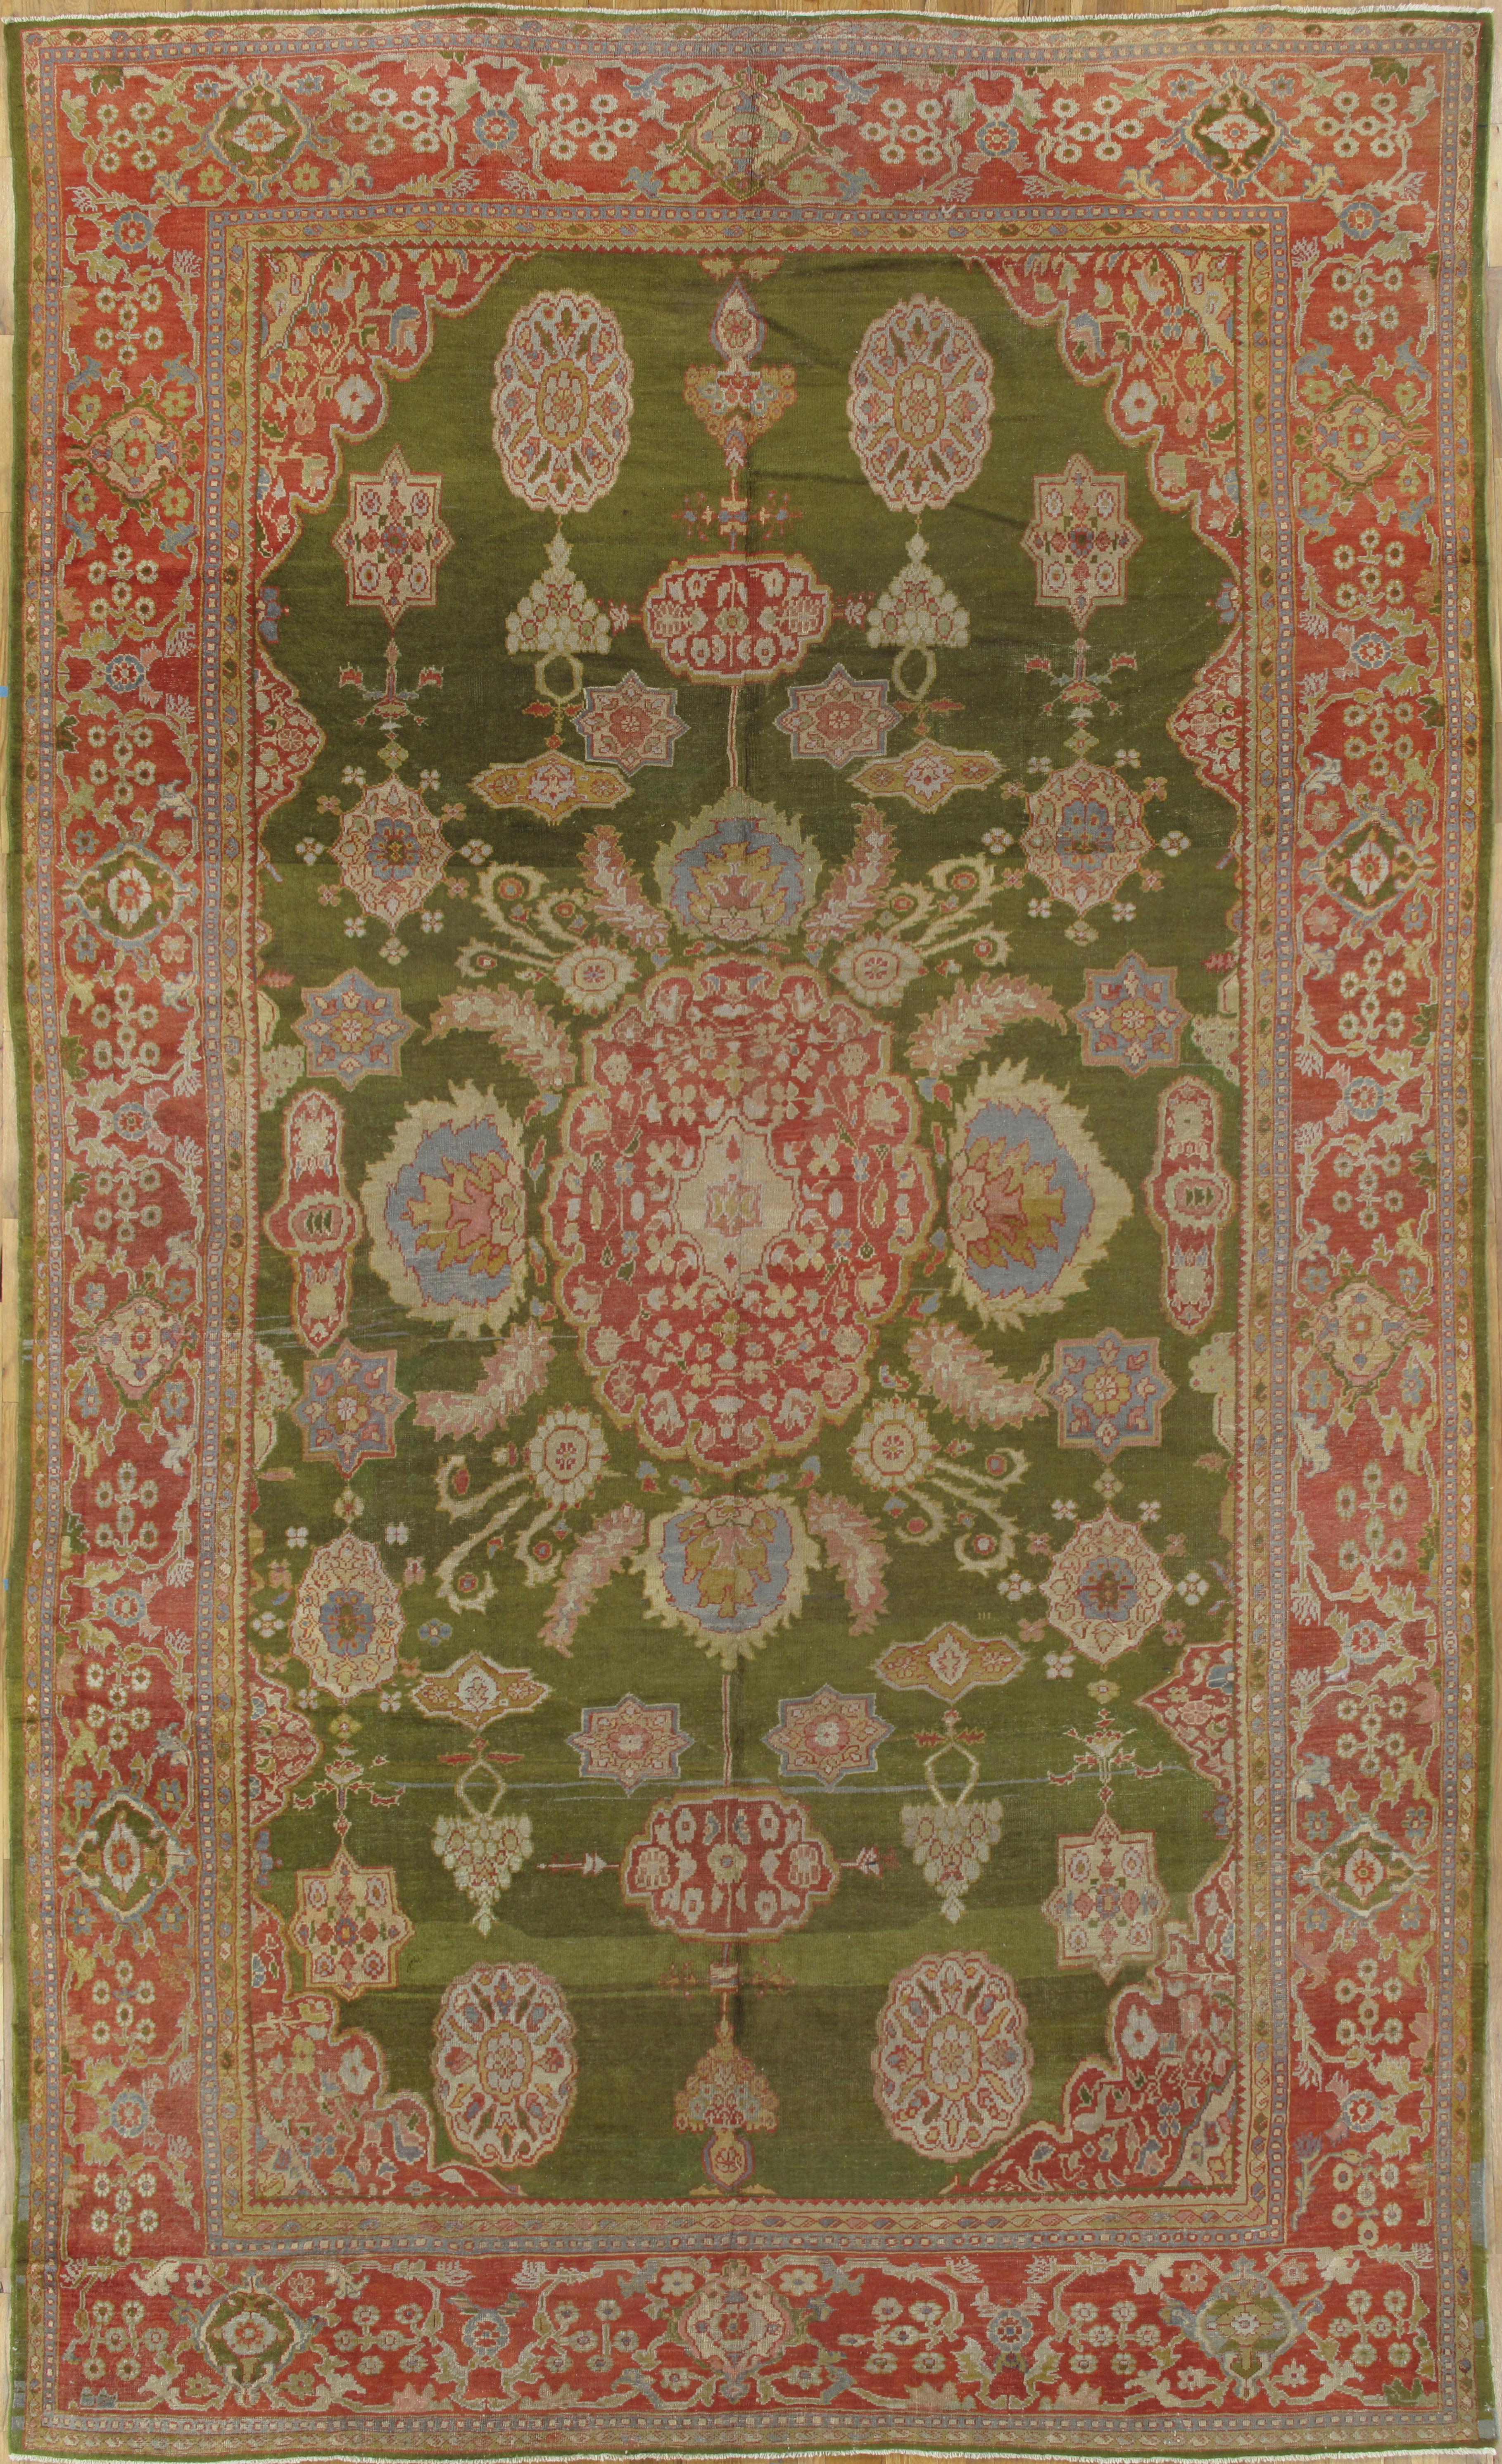 En 1883, Ziegler and Co. de Manchester, en Angleterre, a établi une manufacture de tapis persans à Sultanabad, en Iran, en employant des designers des grands magasins occidentaux, comme B. Altman et Liberty of London, pour modifier les motifs